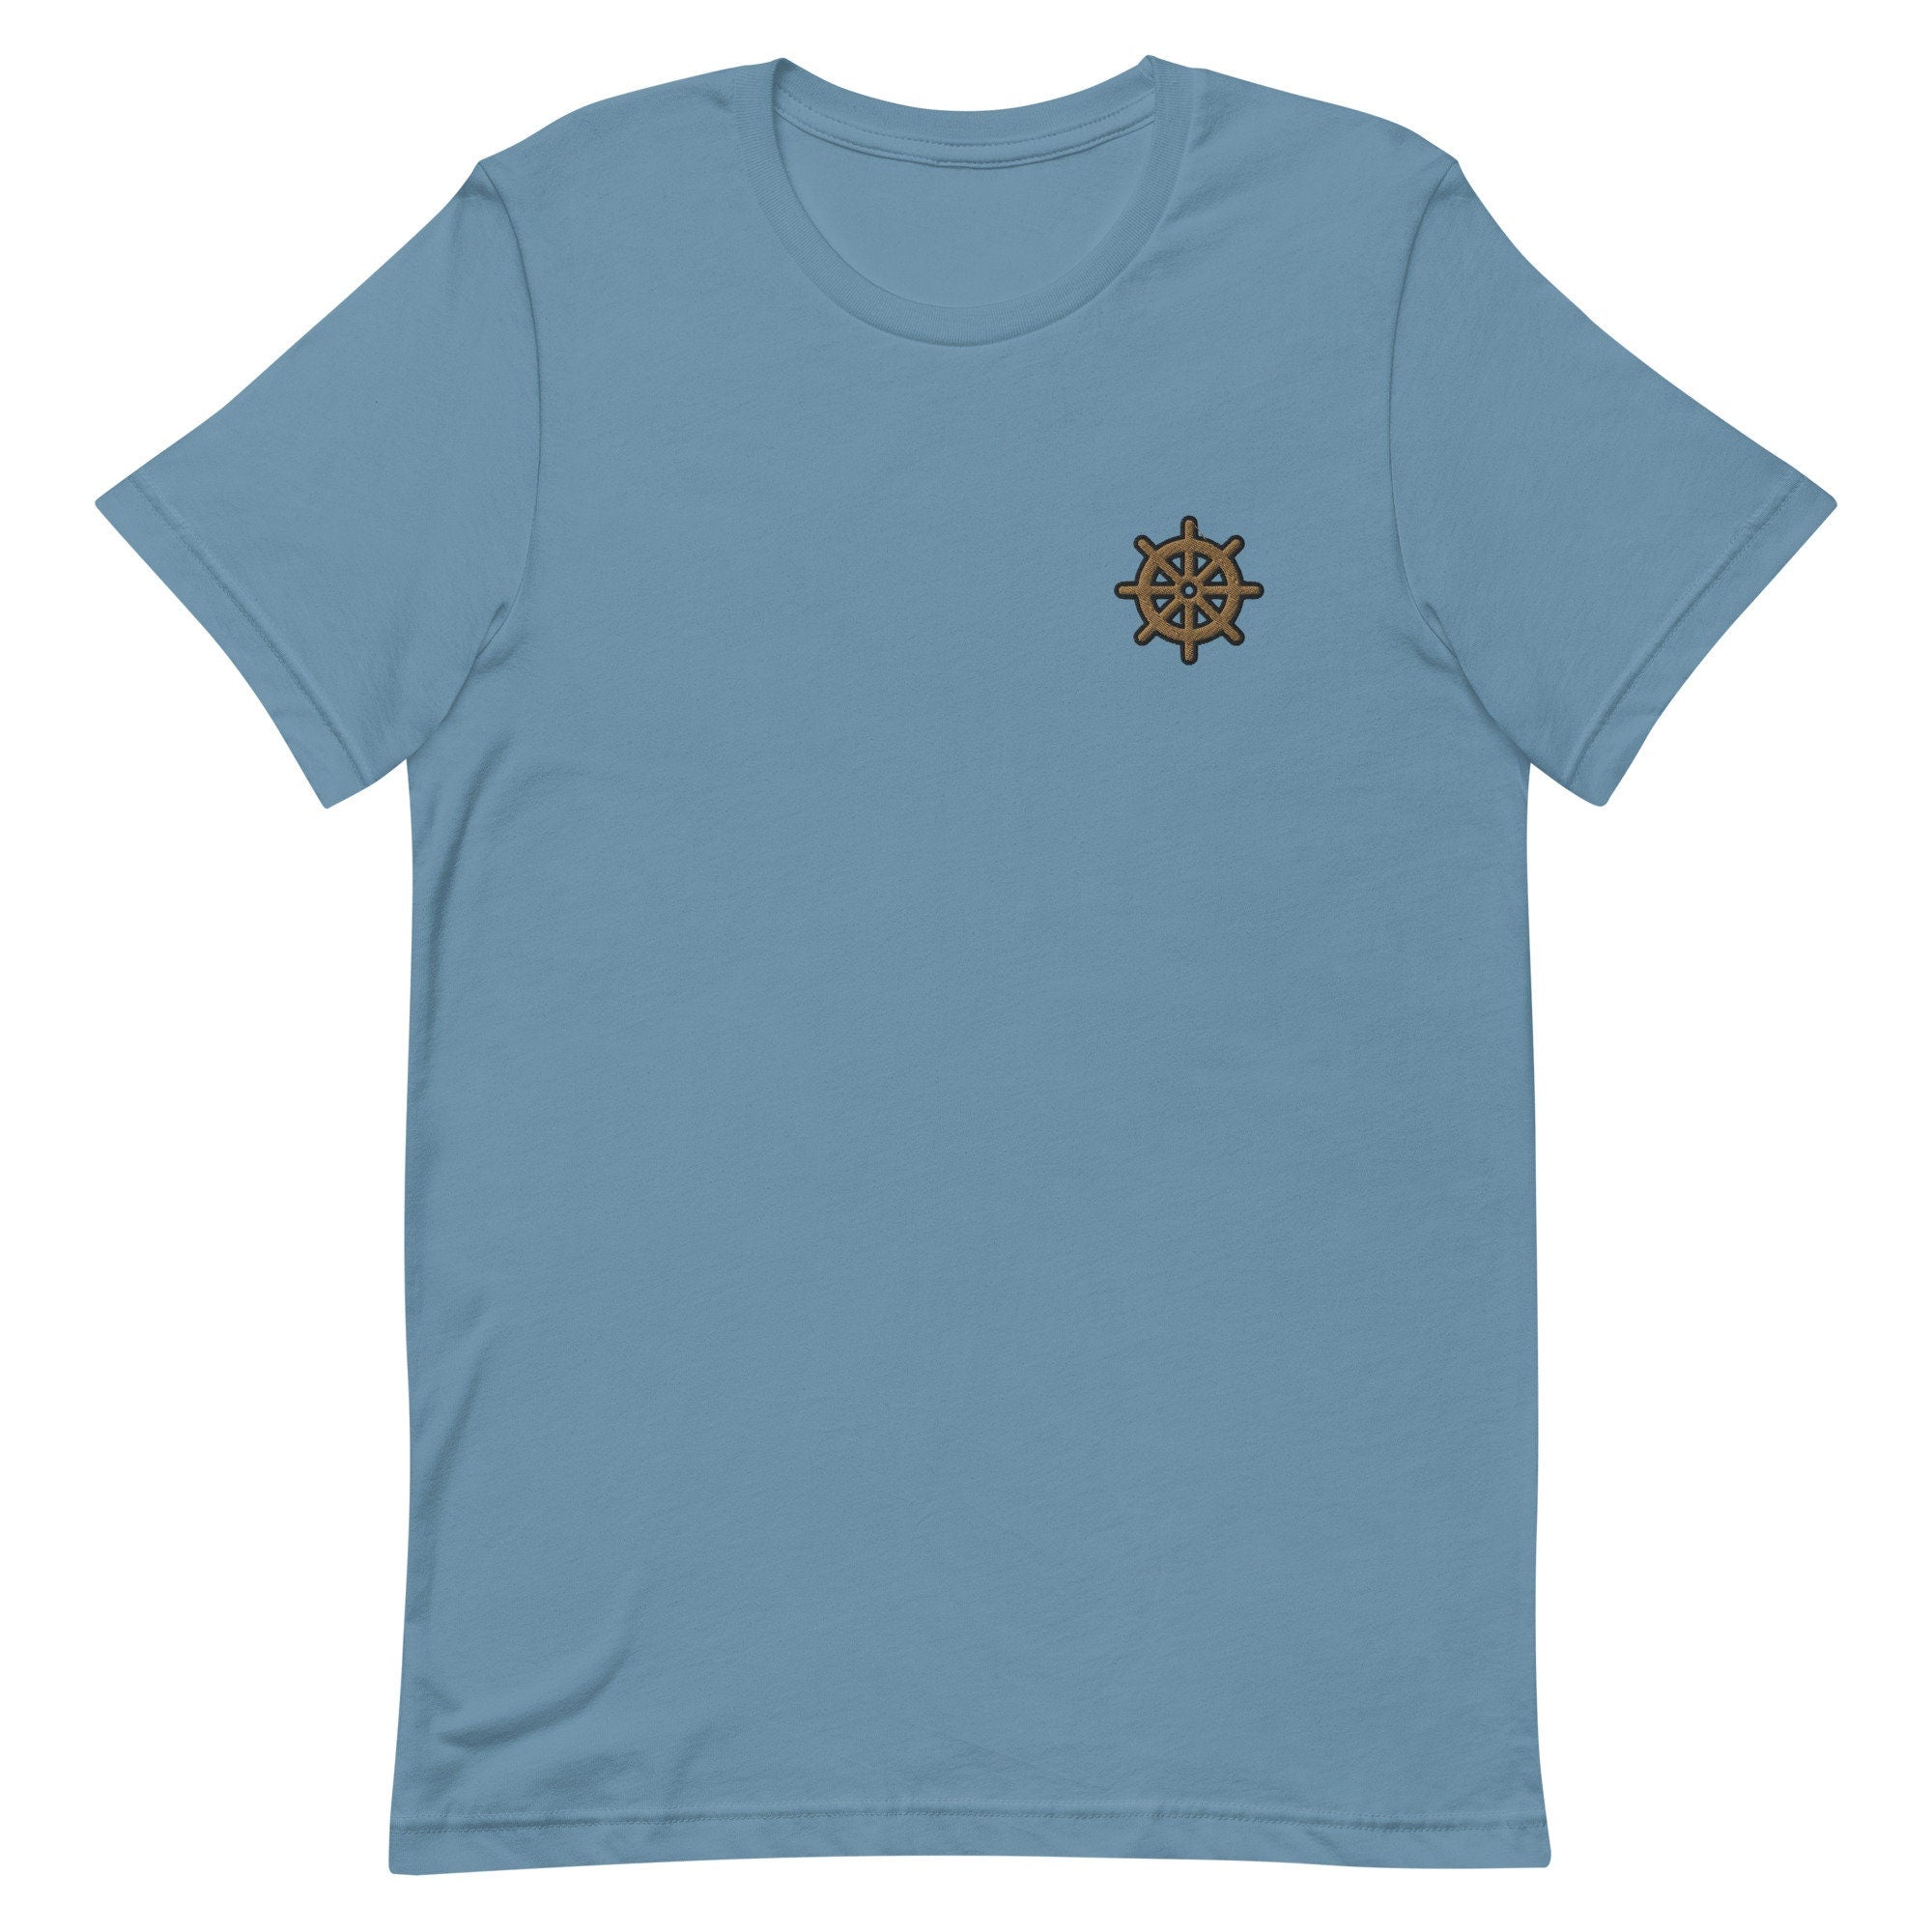 Ship Wheel Premium Men's T-Shirt, Embroidered Men's T-Shirt Gift for Boyfriend, Men's Short Sleeve Shirt - Multiple Colors